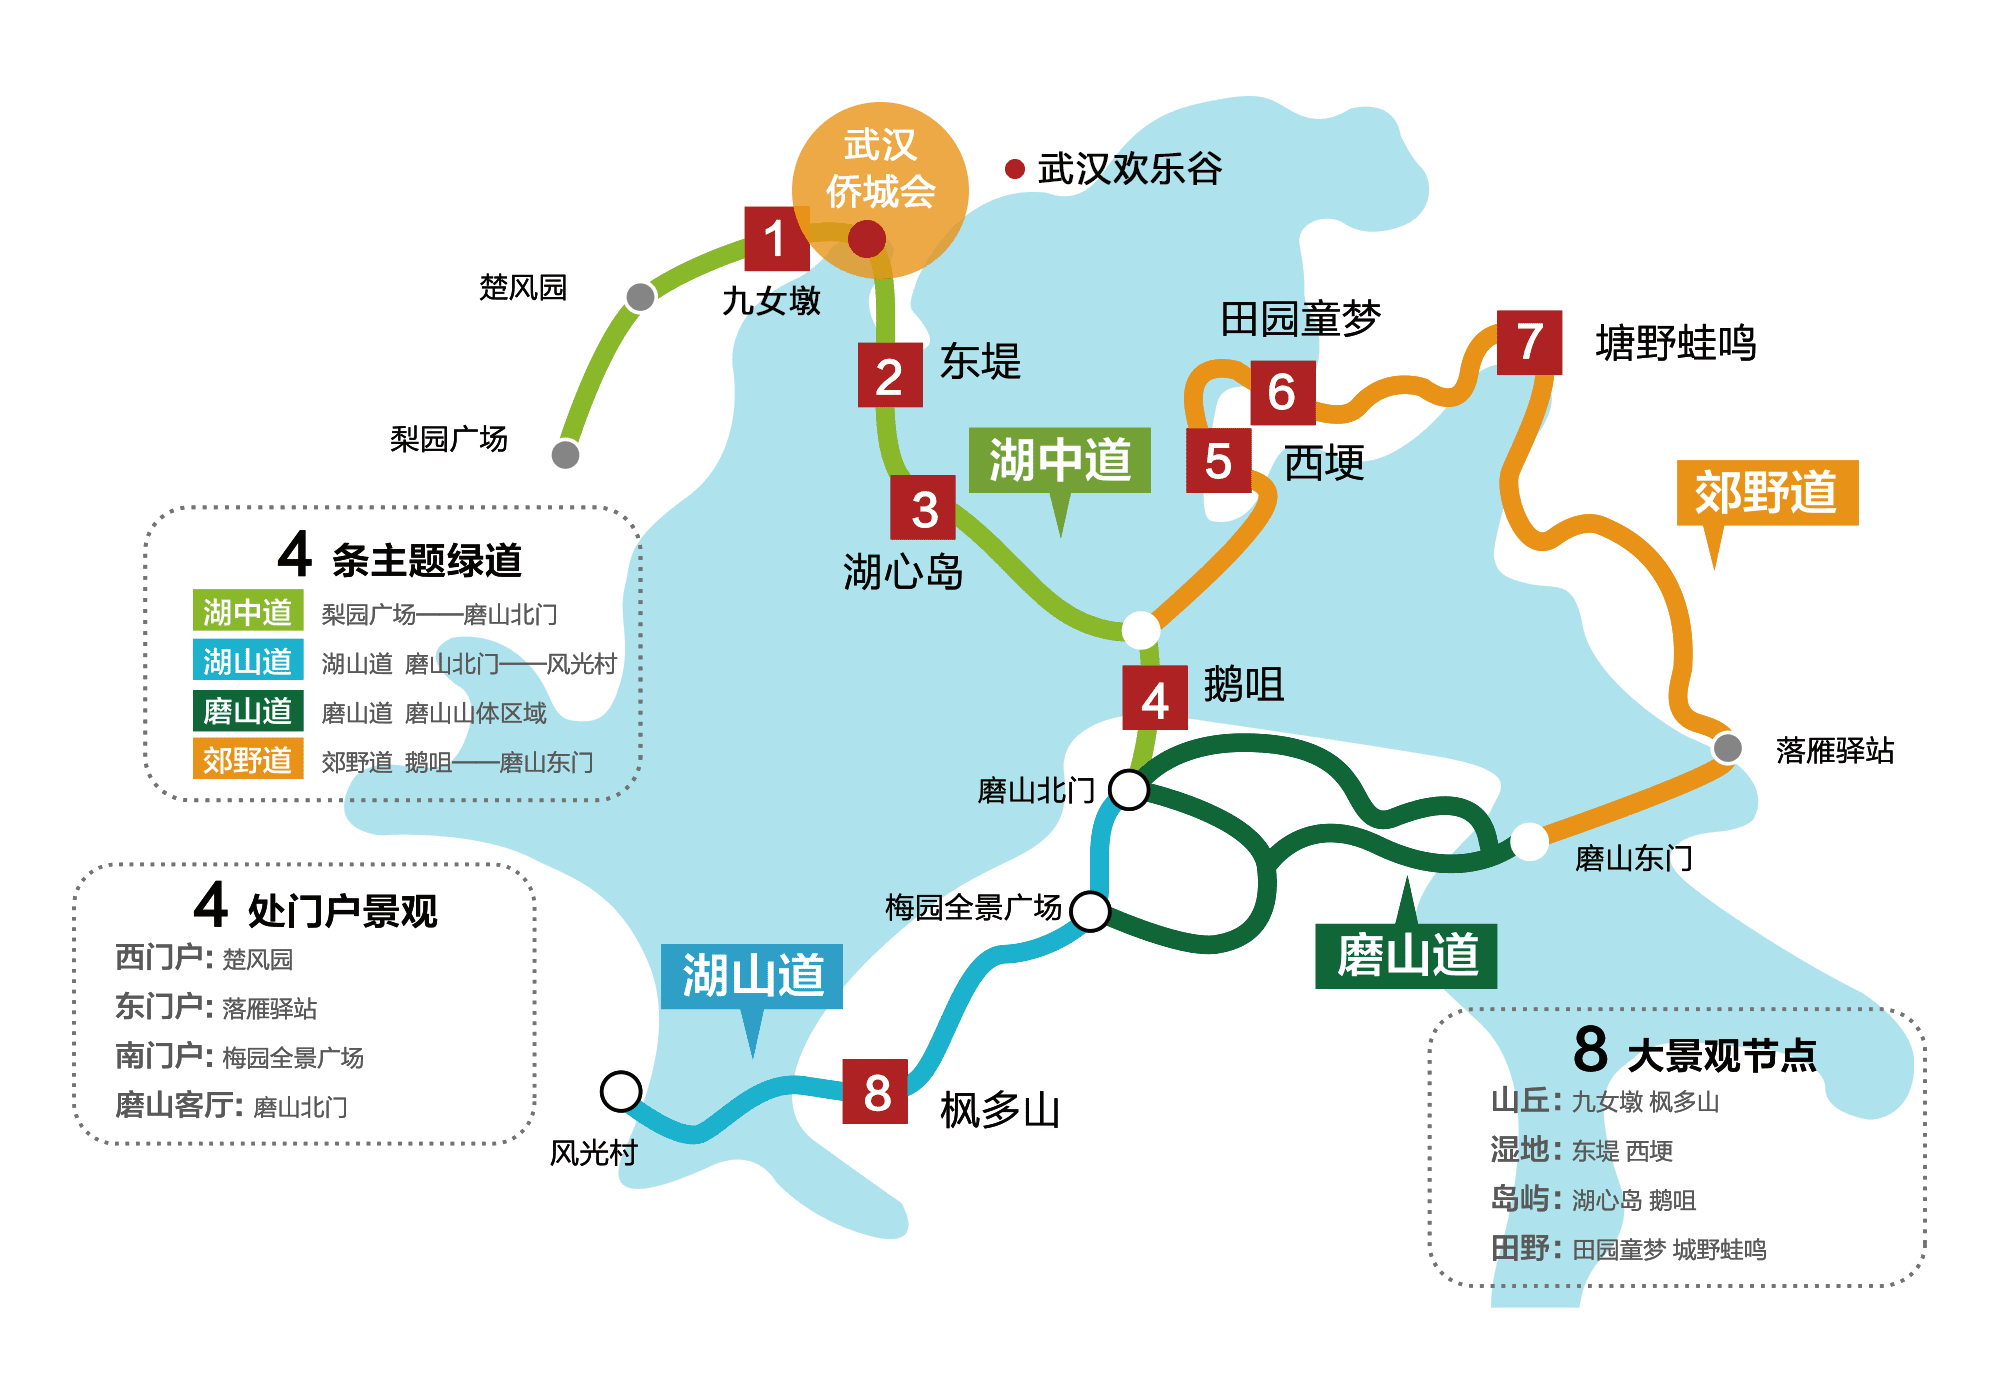 德阳东湖山公园地图图片